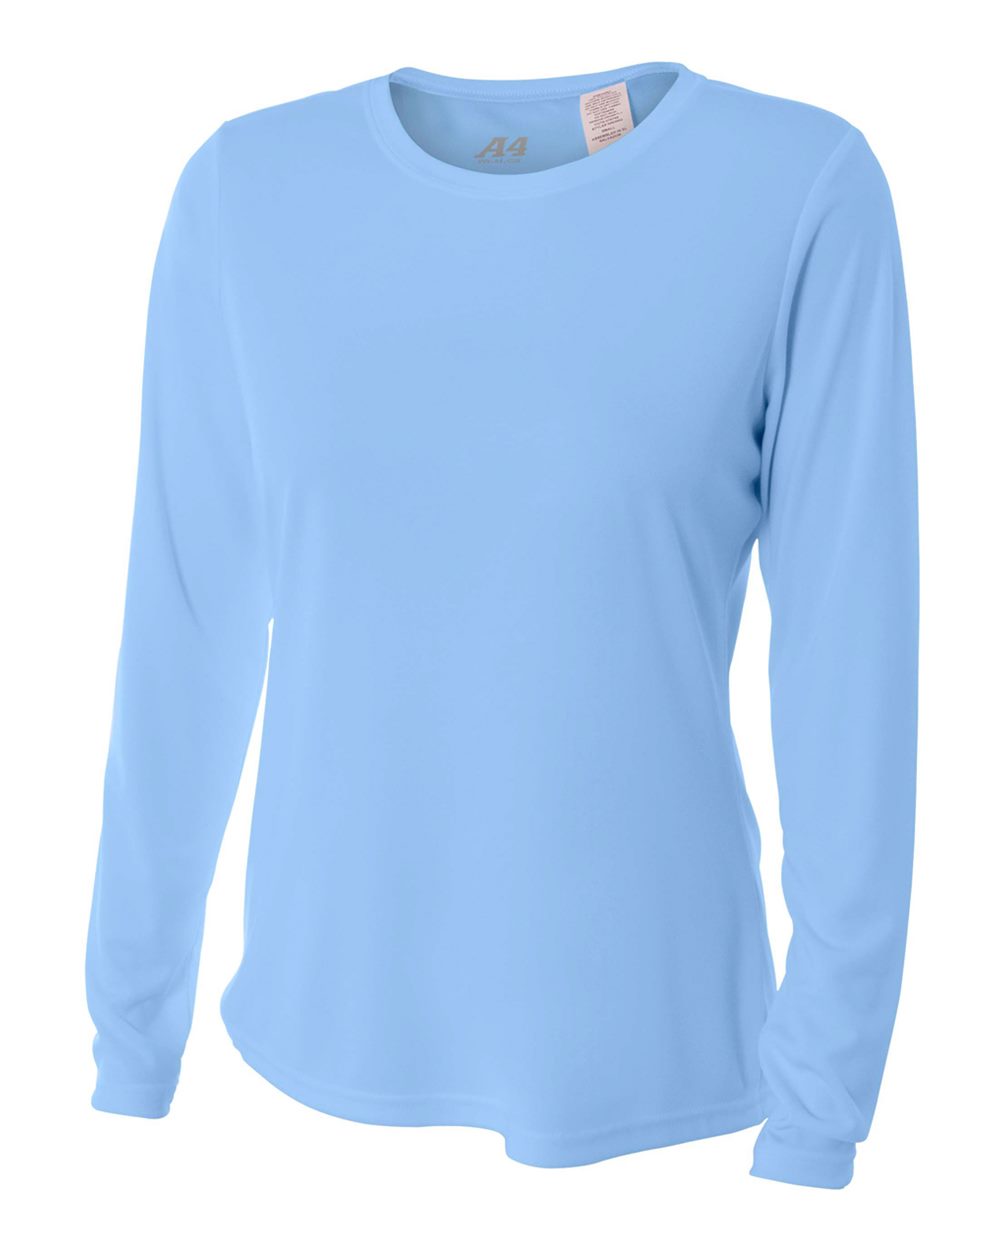 A4 Women's Performance Long-Sleeve Crew Neck Shirt (Light Blue)